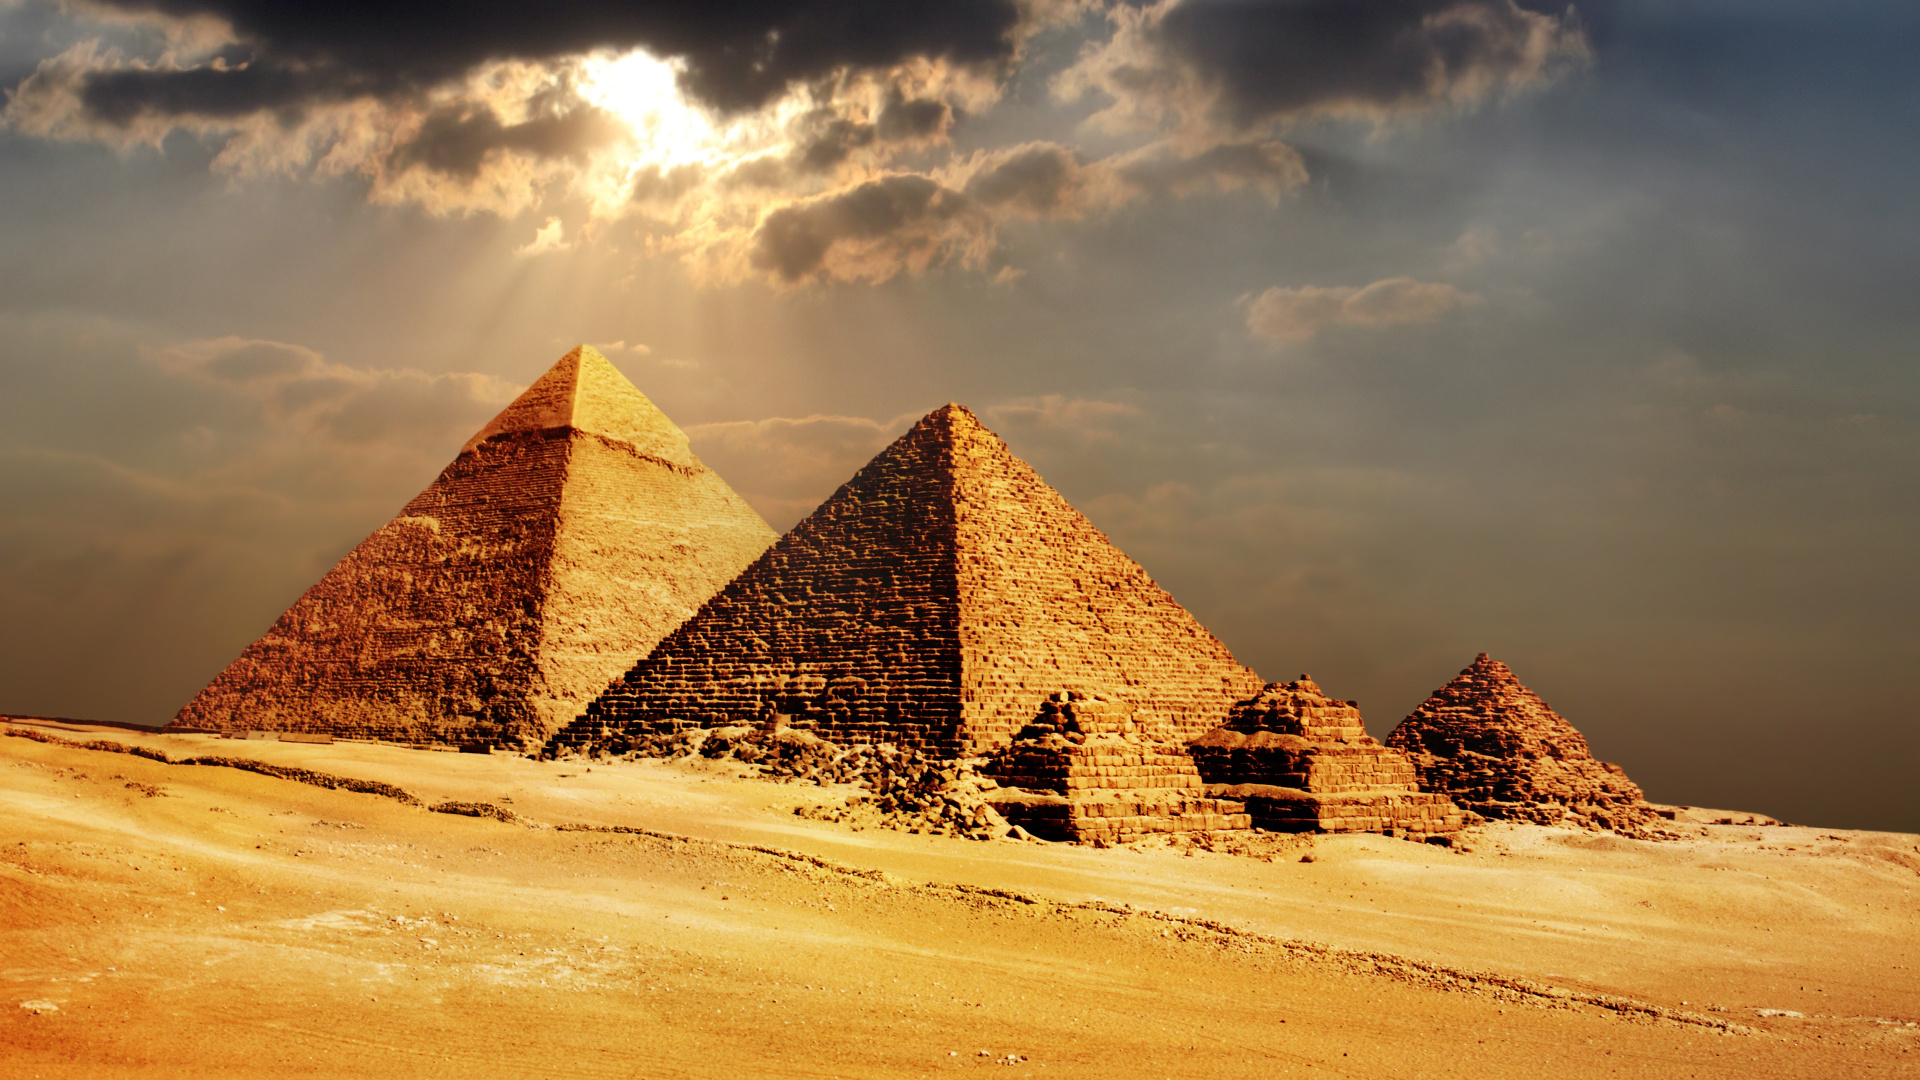 埃及金字塔, 金字塔, 纪念碑, 古代历史, 历史站 壁纸 1920x1080 允许